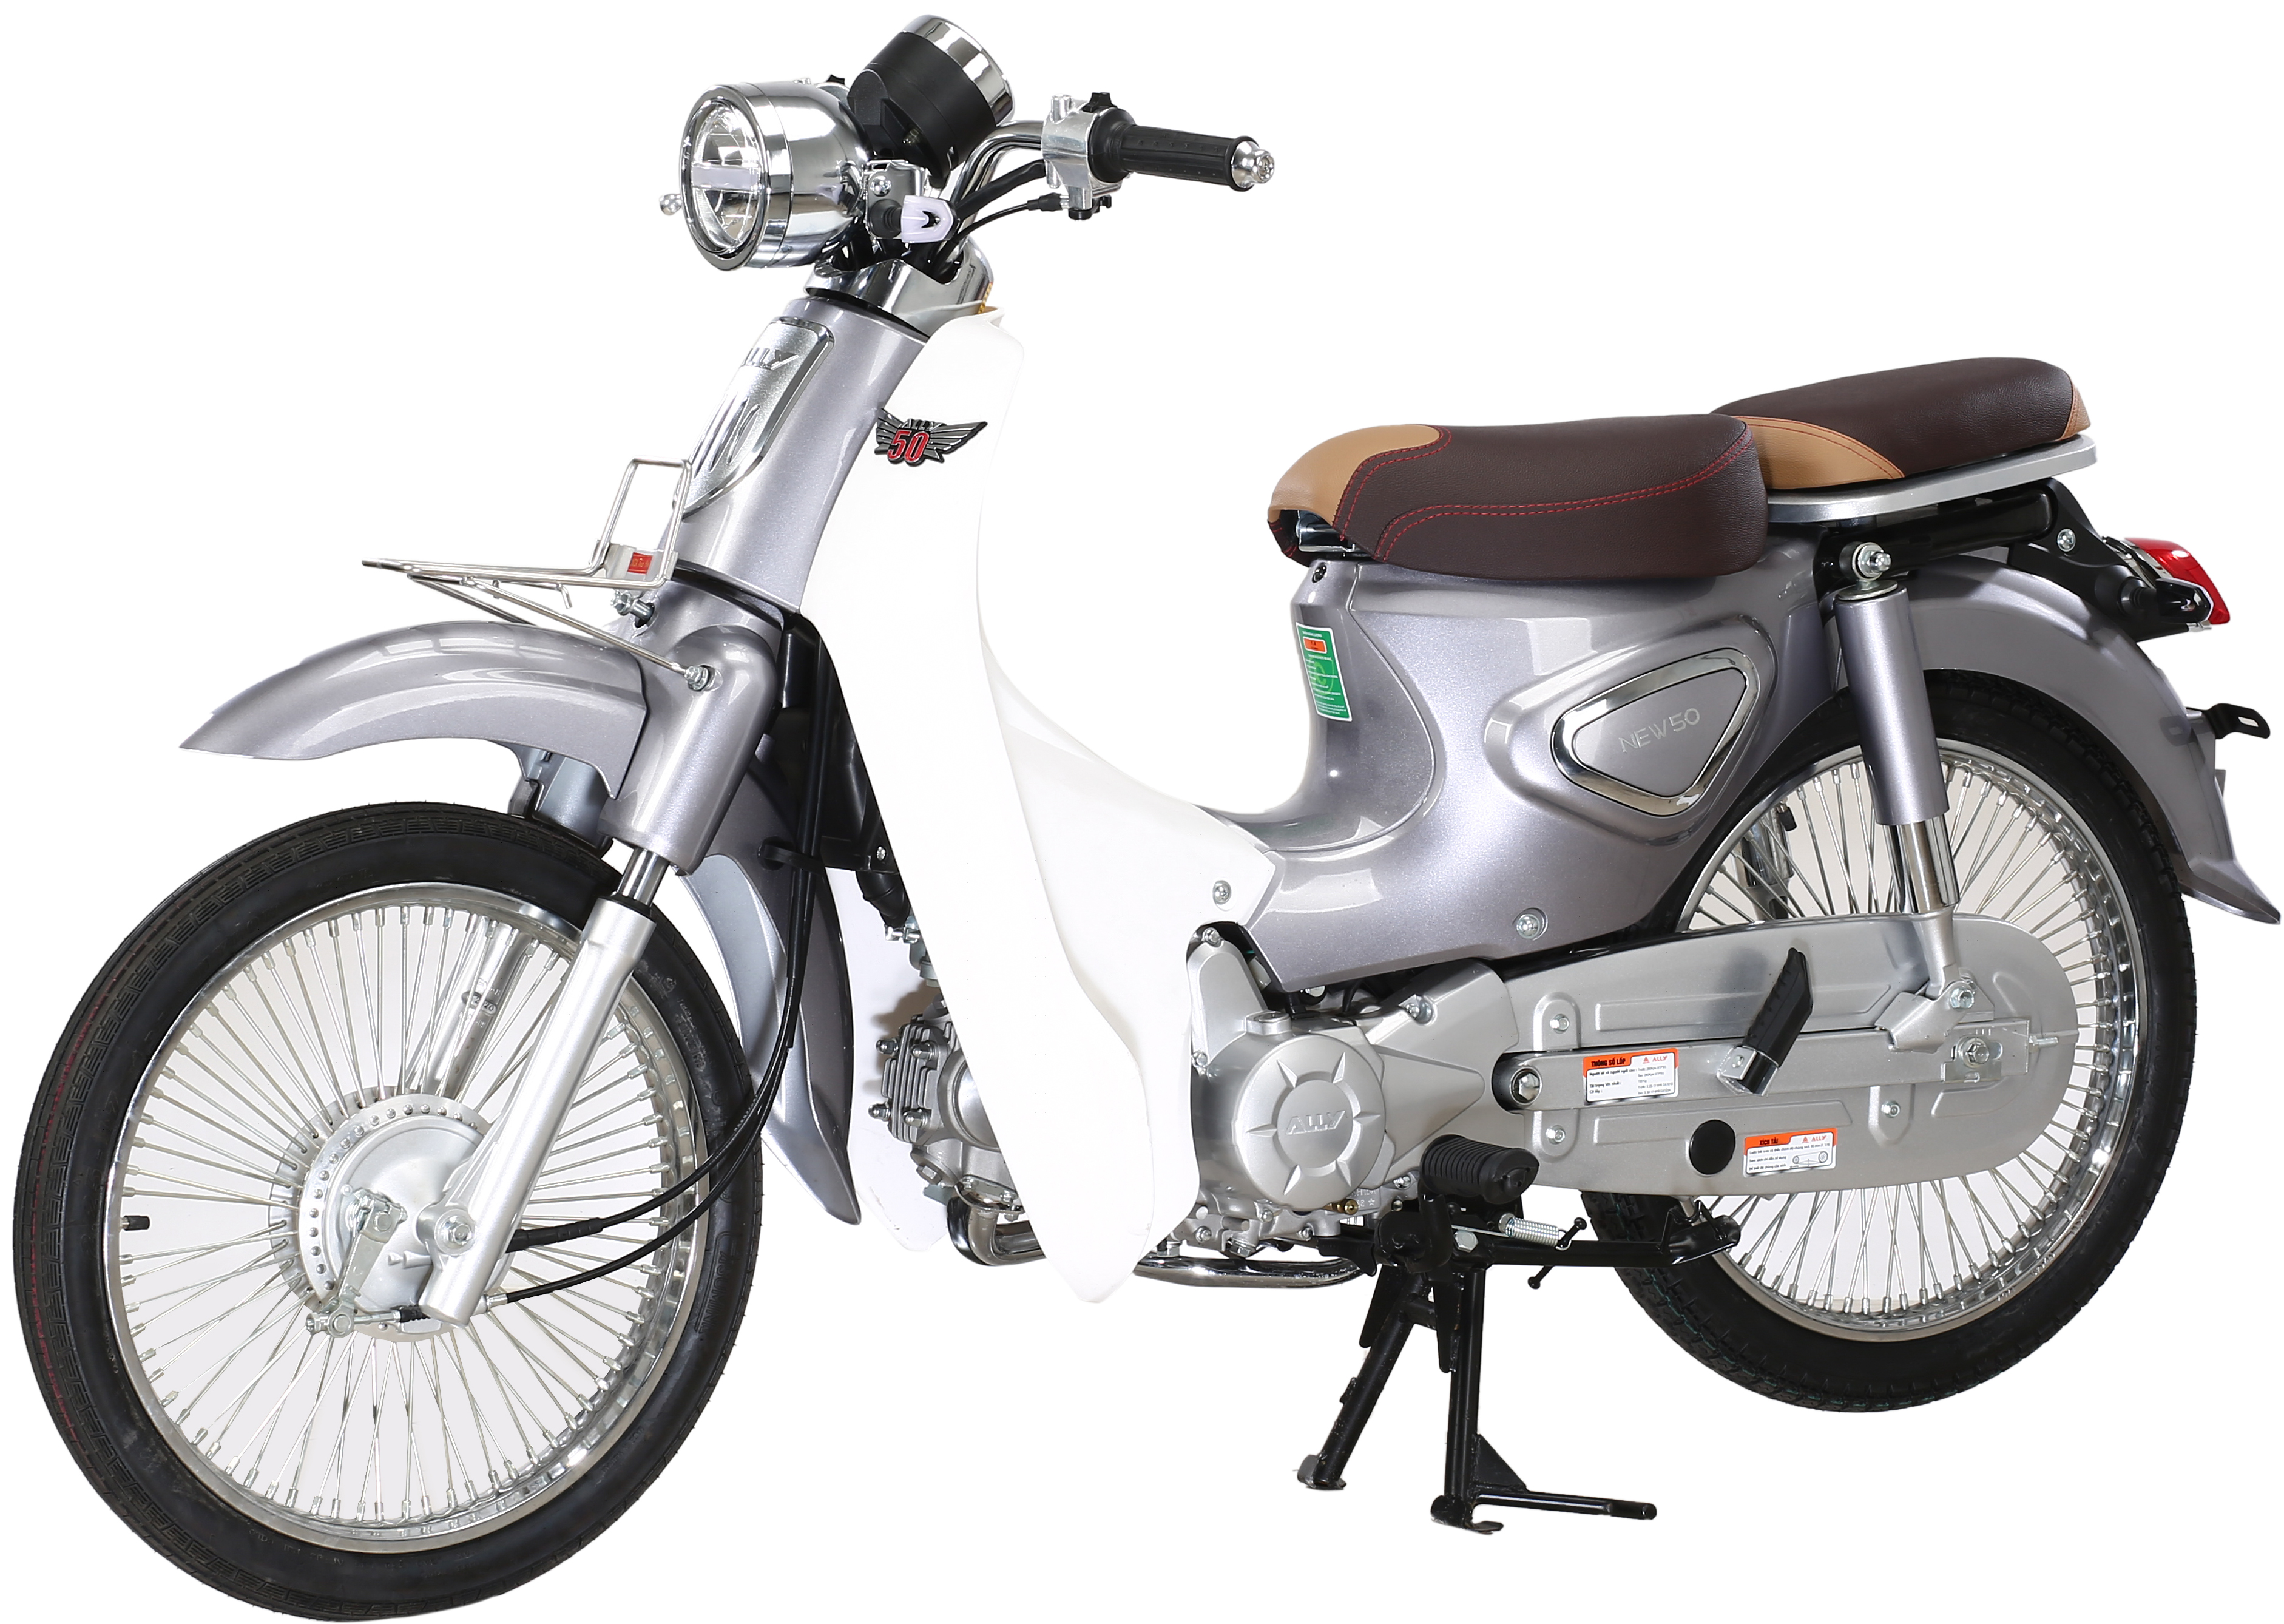 Hướng dẫn lái xe máy 50cc Cub New Ally 2022 sang đường an toàn